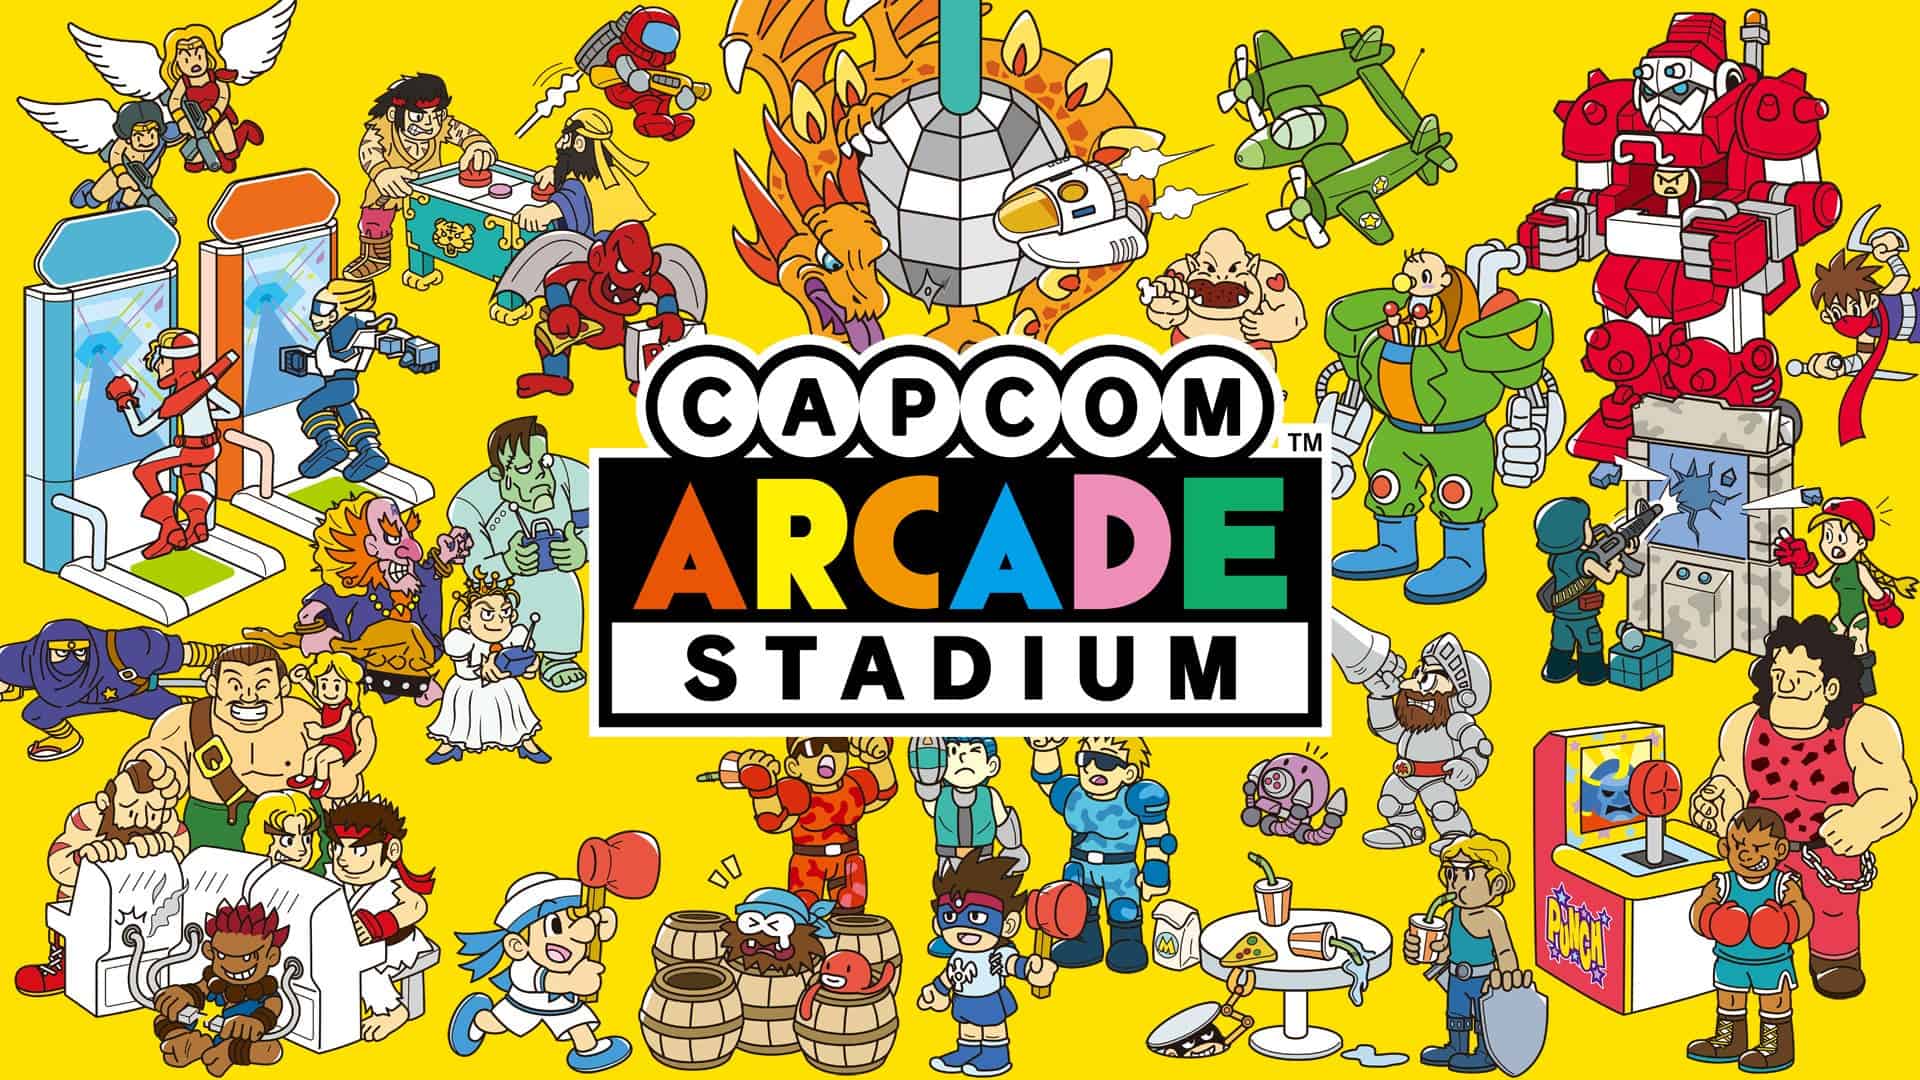 Capcom Arcade Stadium will get new content via DLC